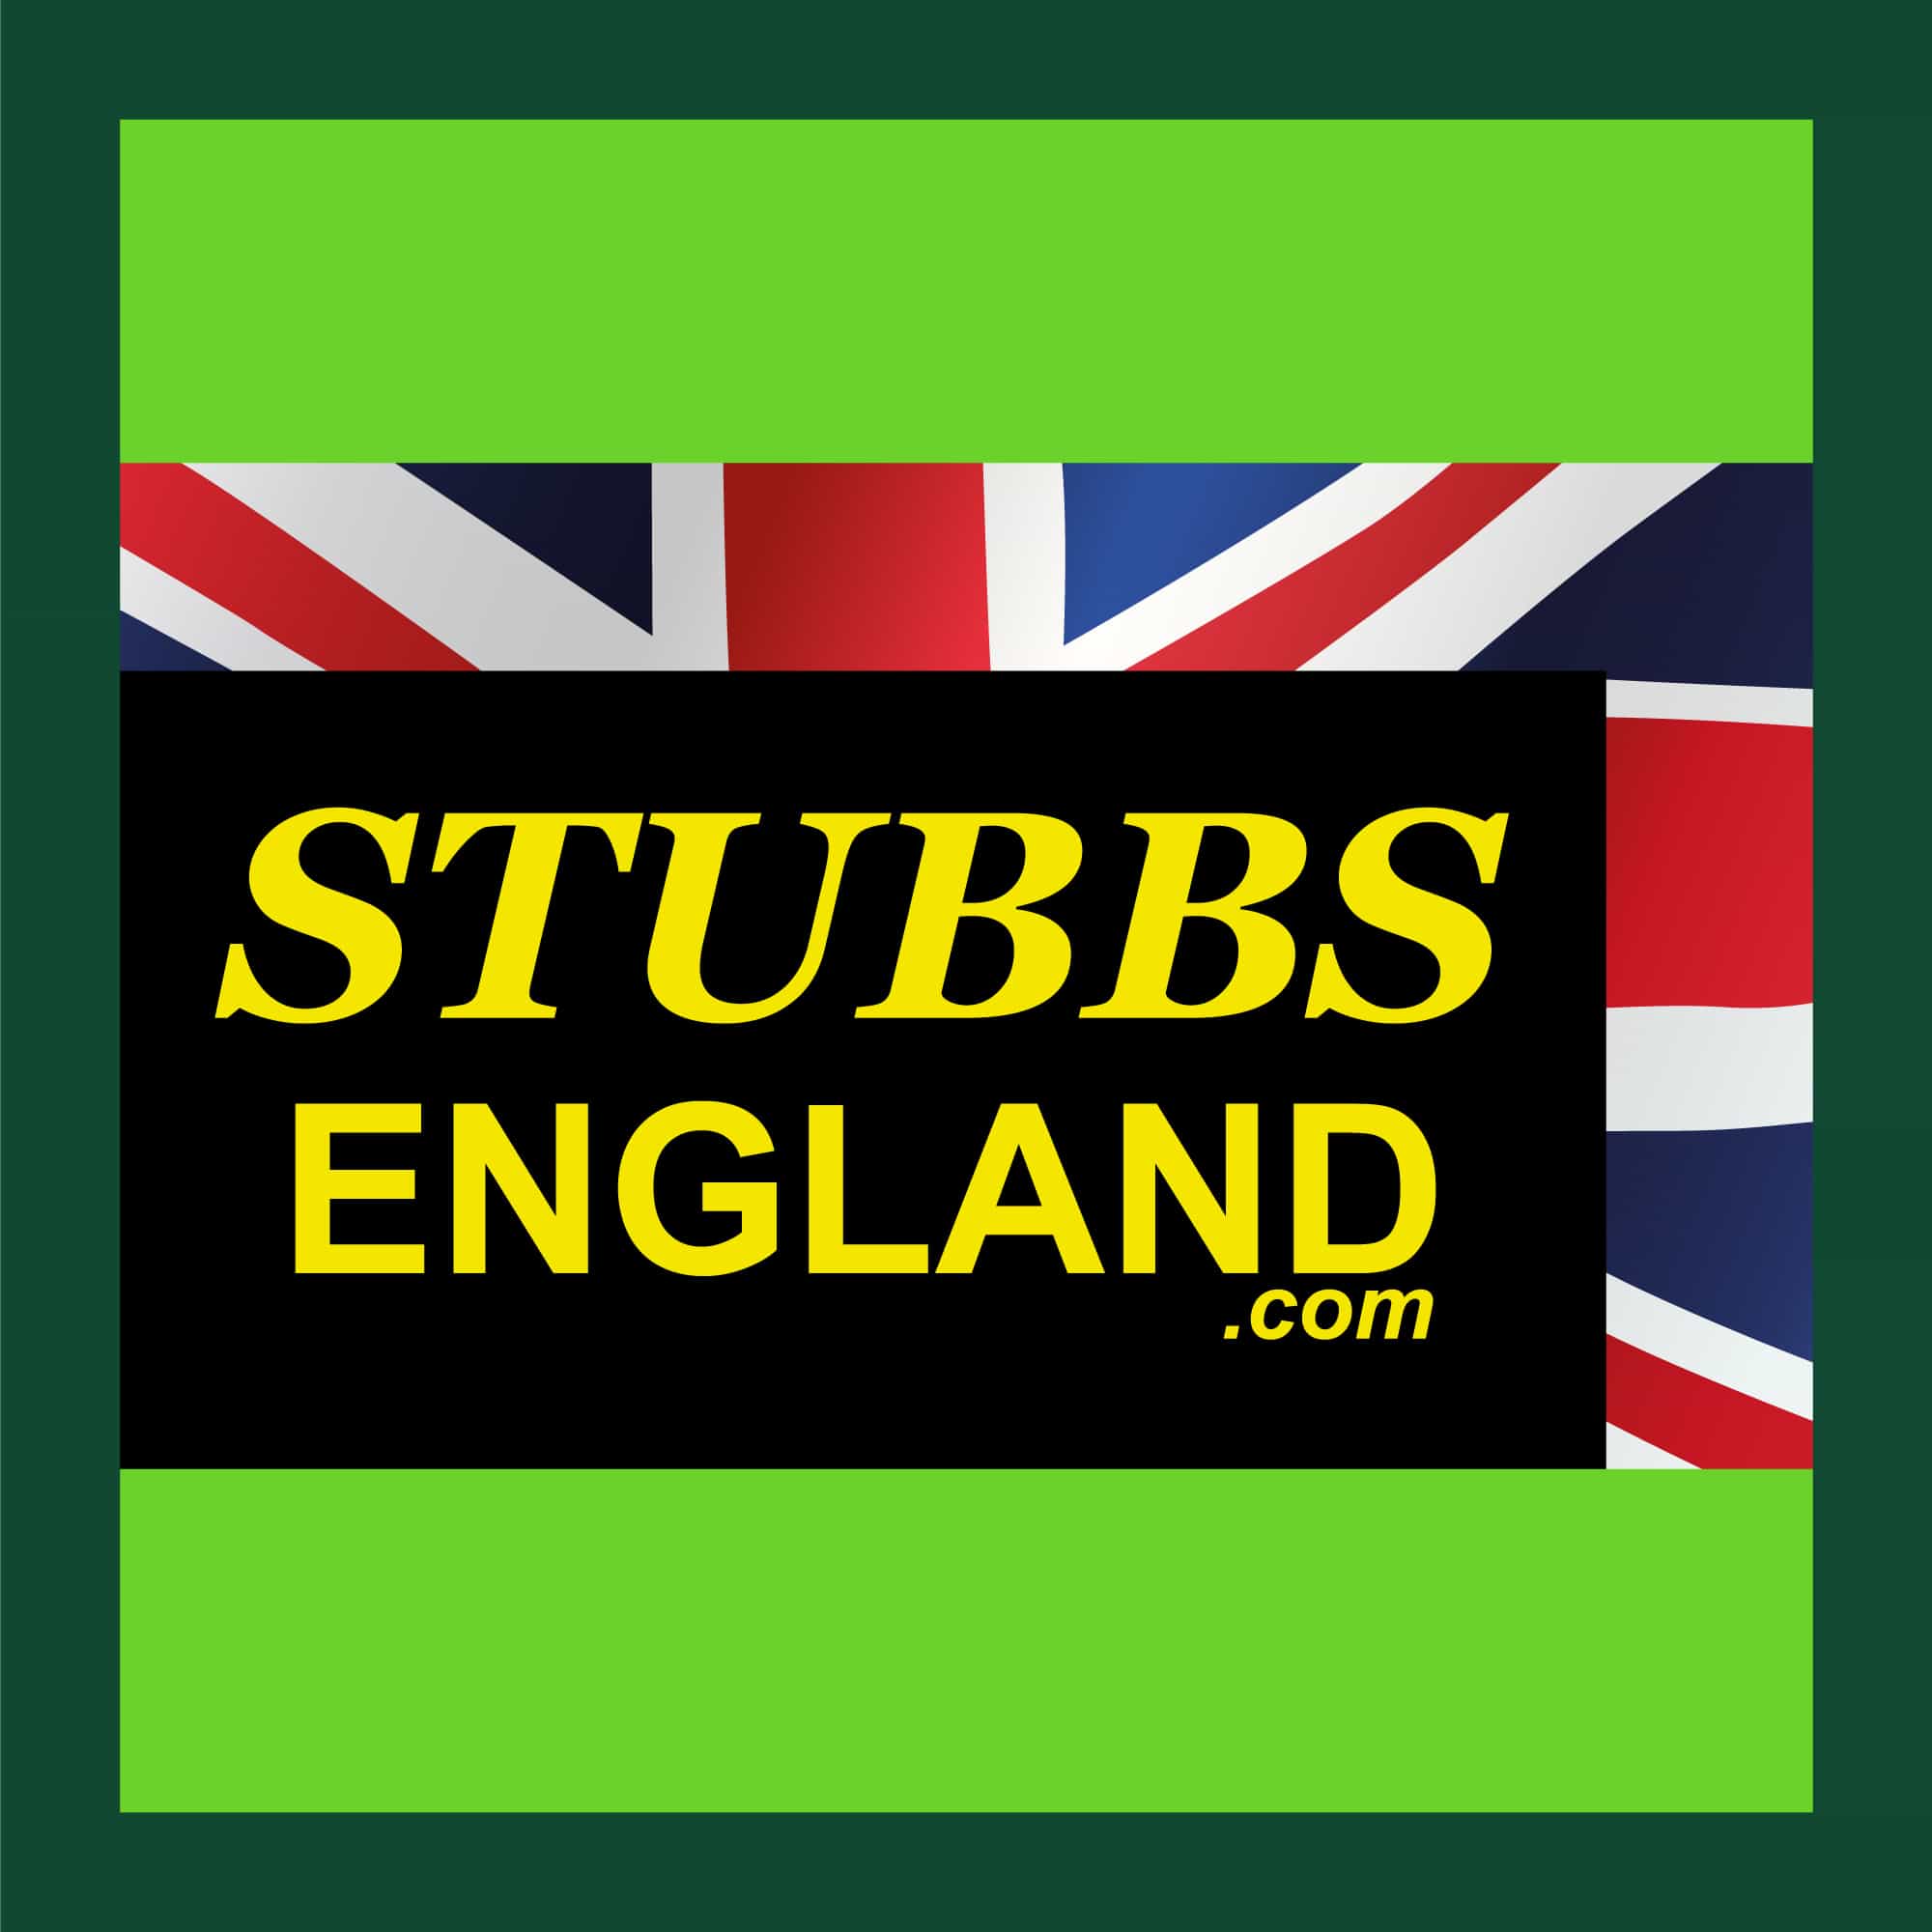 STUBBS ENGLAND SQUARE GREEN LOGO